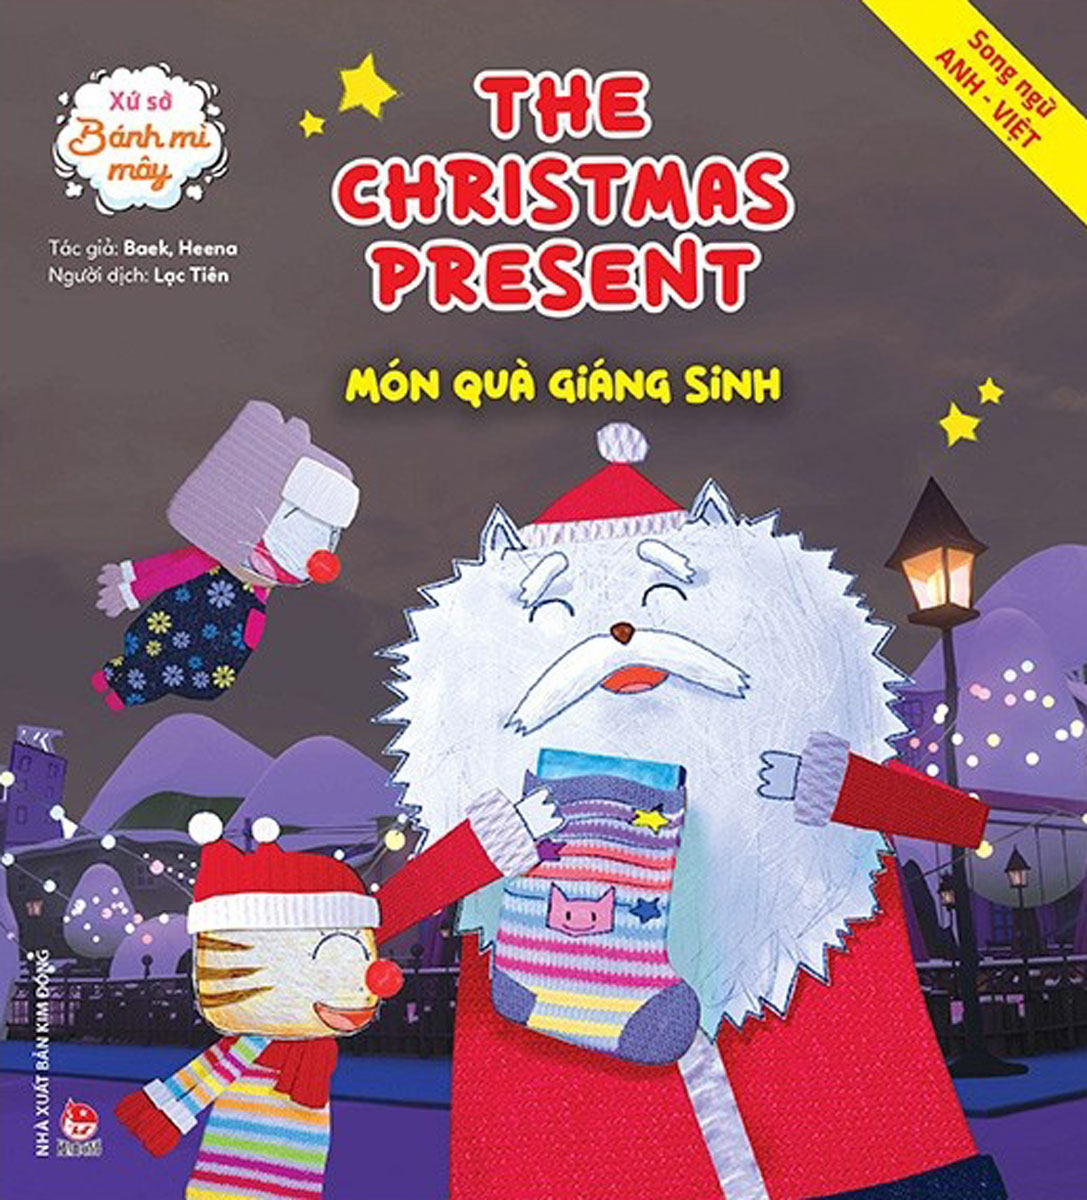 Xứ Sở Bánh Mì Mây: The Christmas Present - Món Quà Giáng Sinh